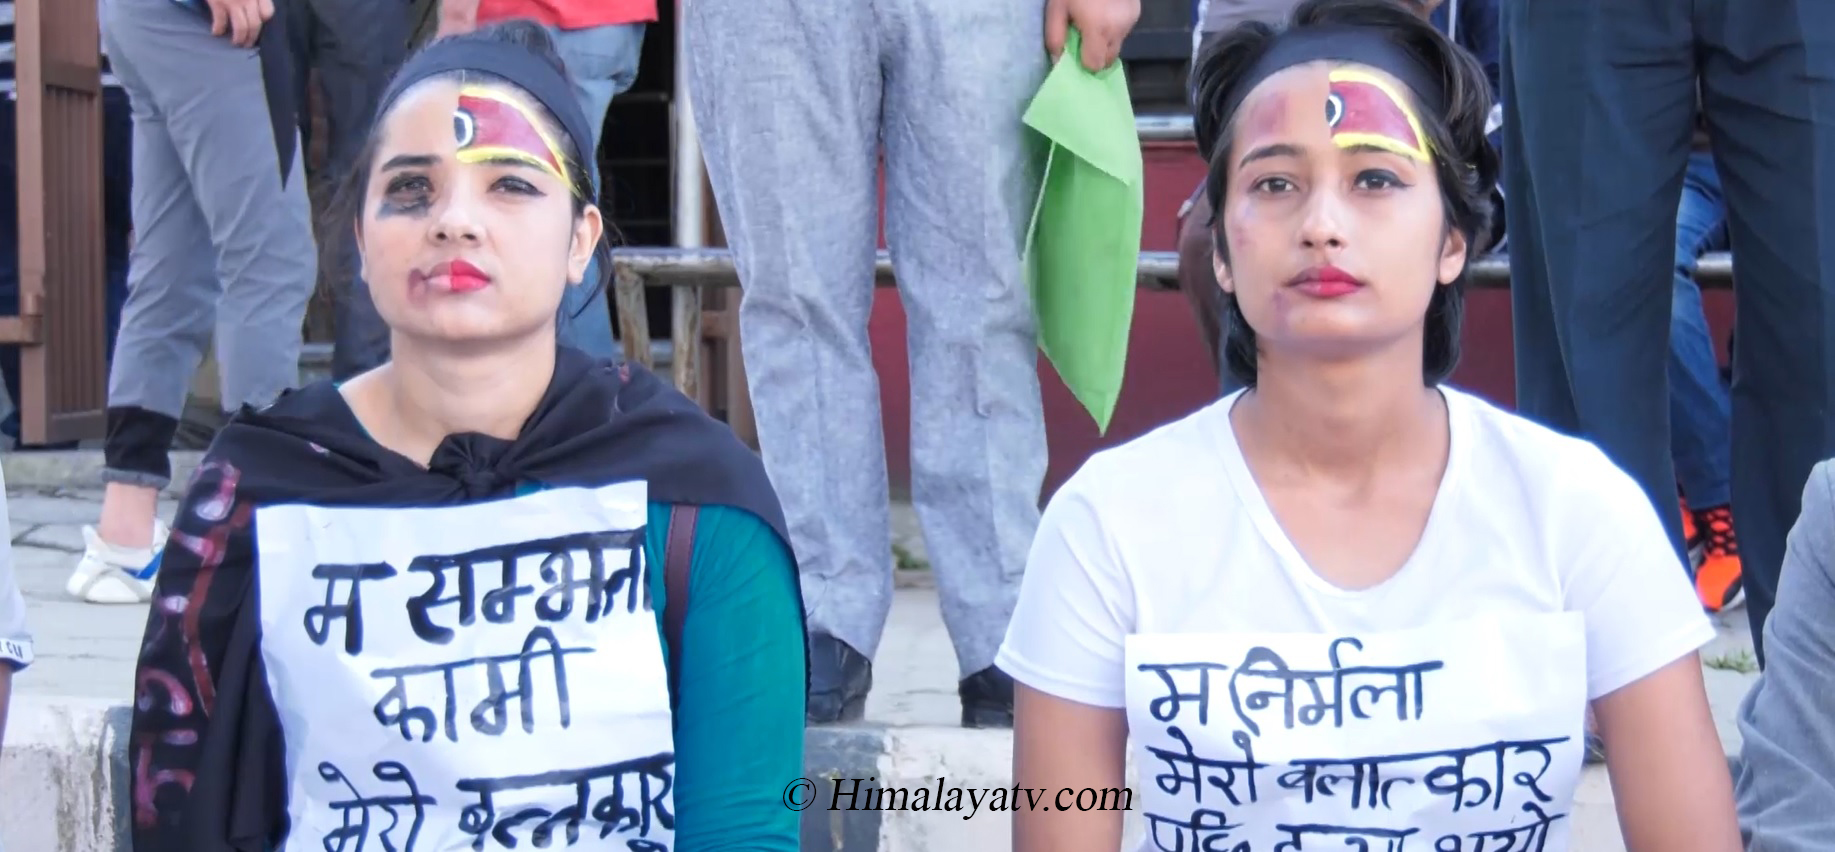 सम्झना विकको बलात्कारपछि हत्याको विरोधमा काठमाडौंमा प्रदर्शन